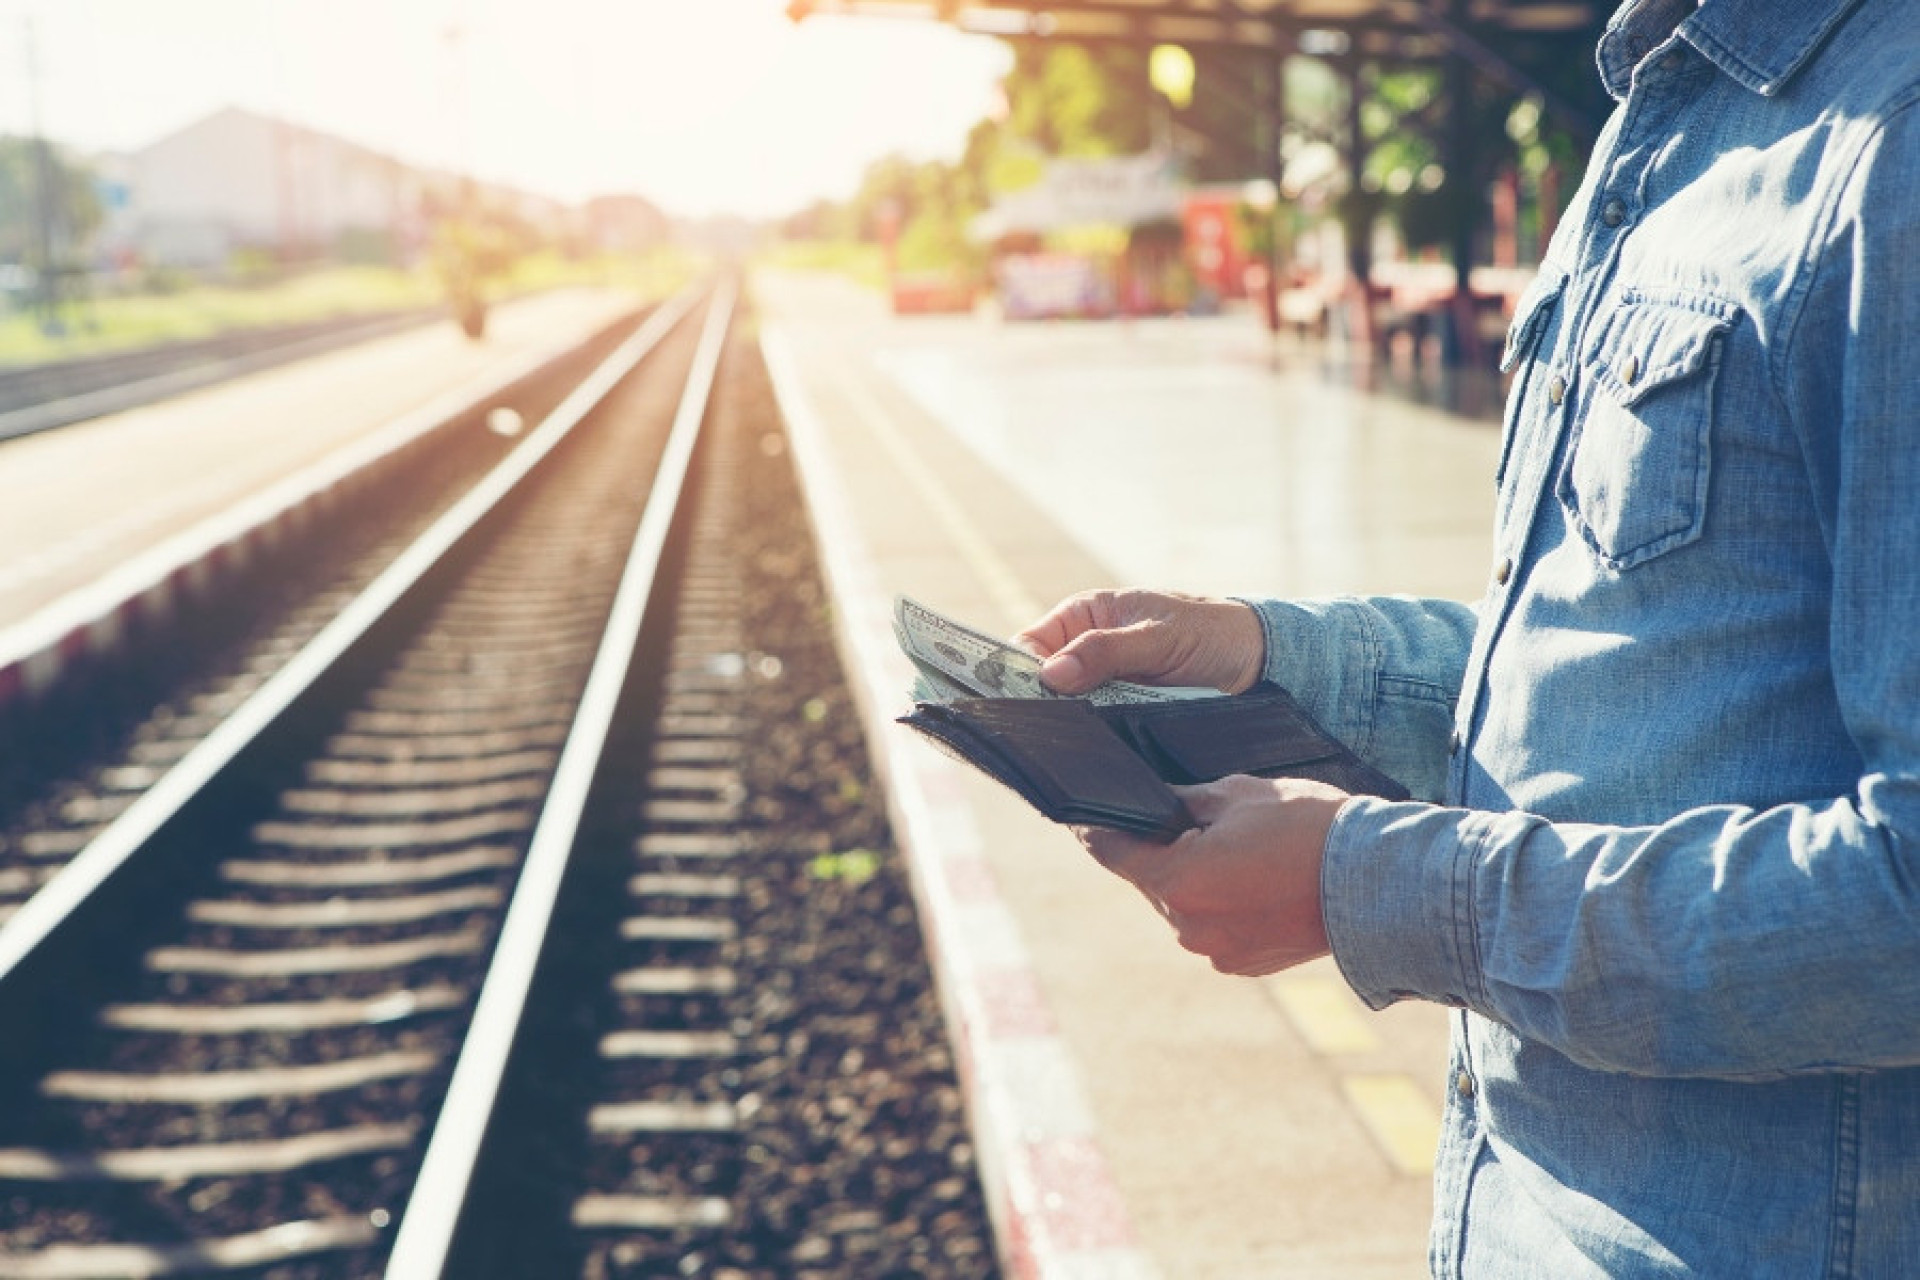 Los trenes suelen ofrecer tarifas competitivas, lo que supone una opción económica para los viajeros que buscan medios de transporte rentables.